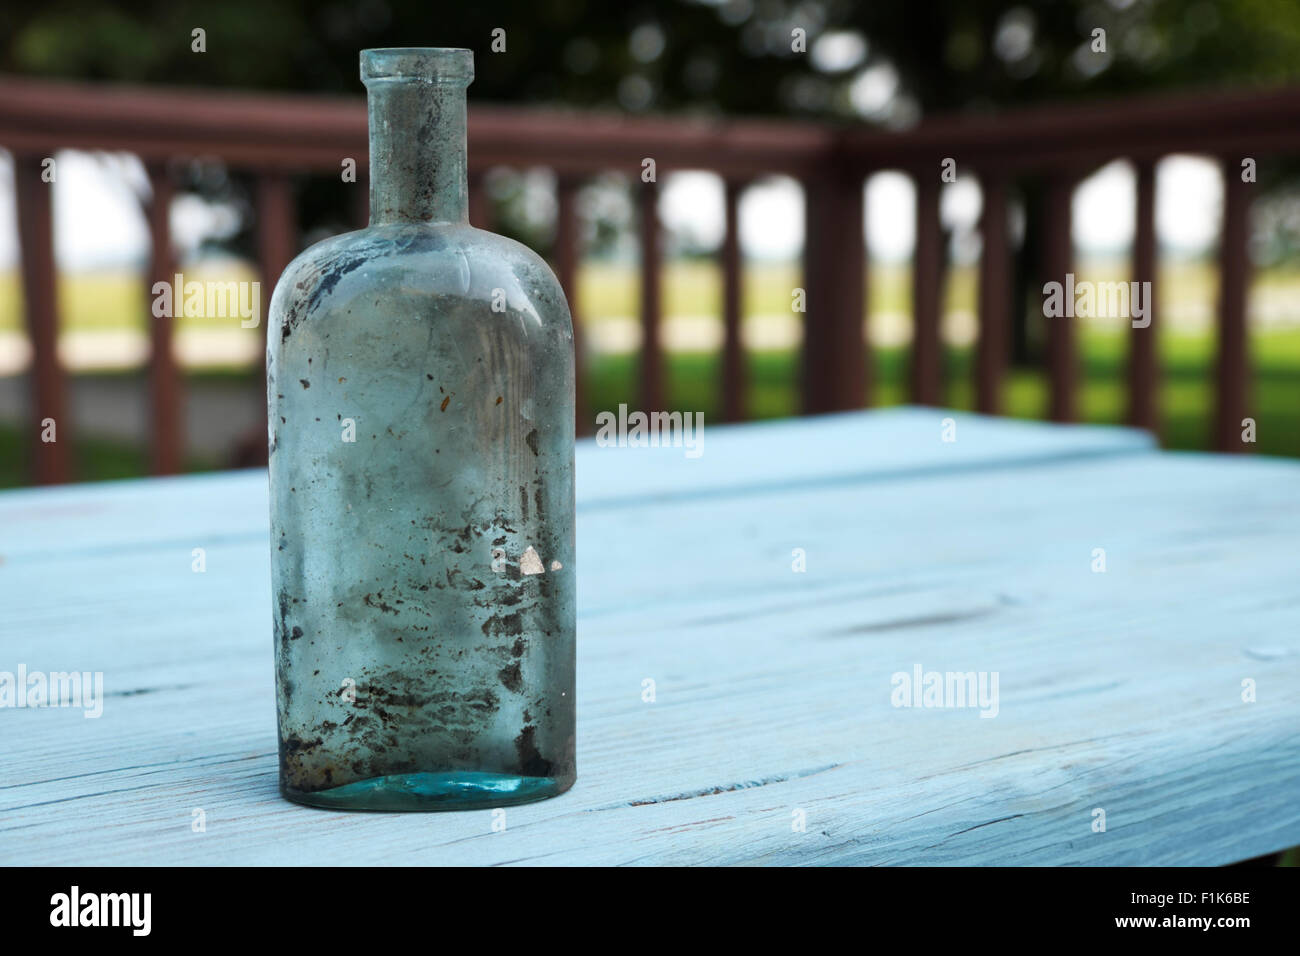 Meubles anciens en verre soufflé, affichée sur un flacon de médicaments peintes en bleu, rustique table de pique-nique. Banque D'Images